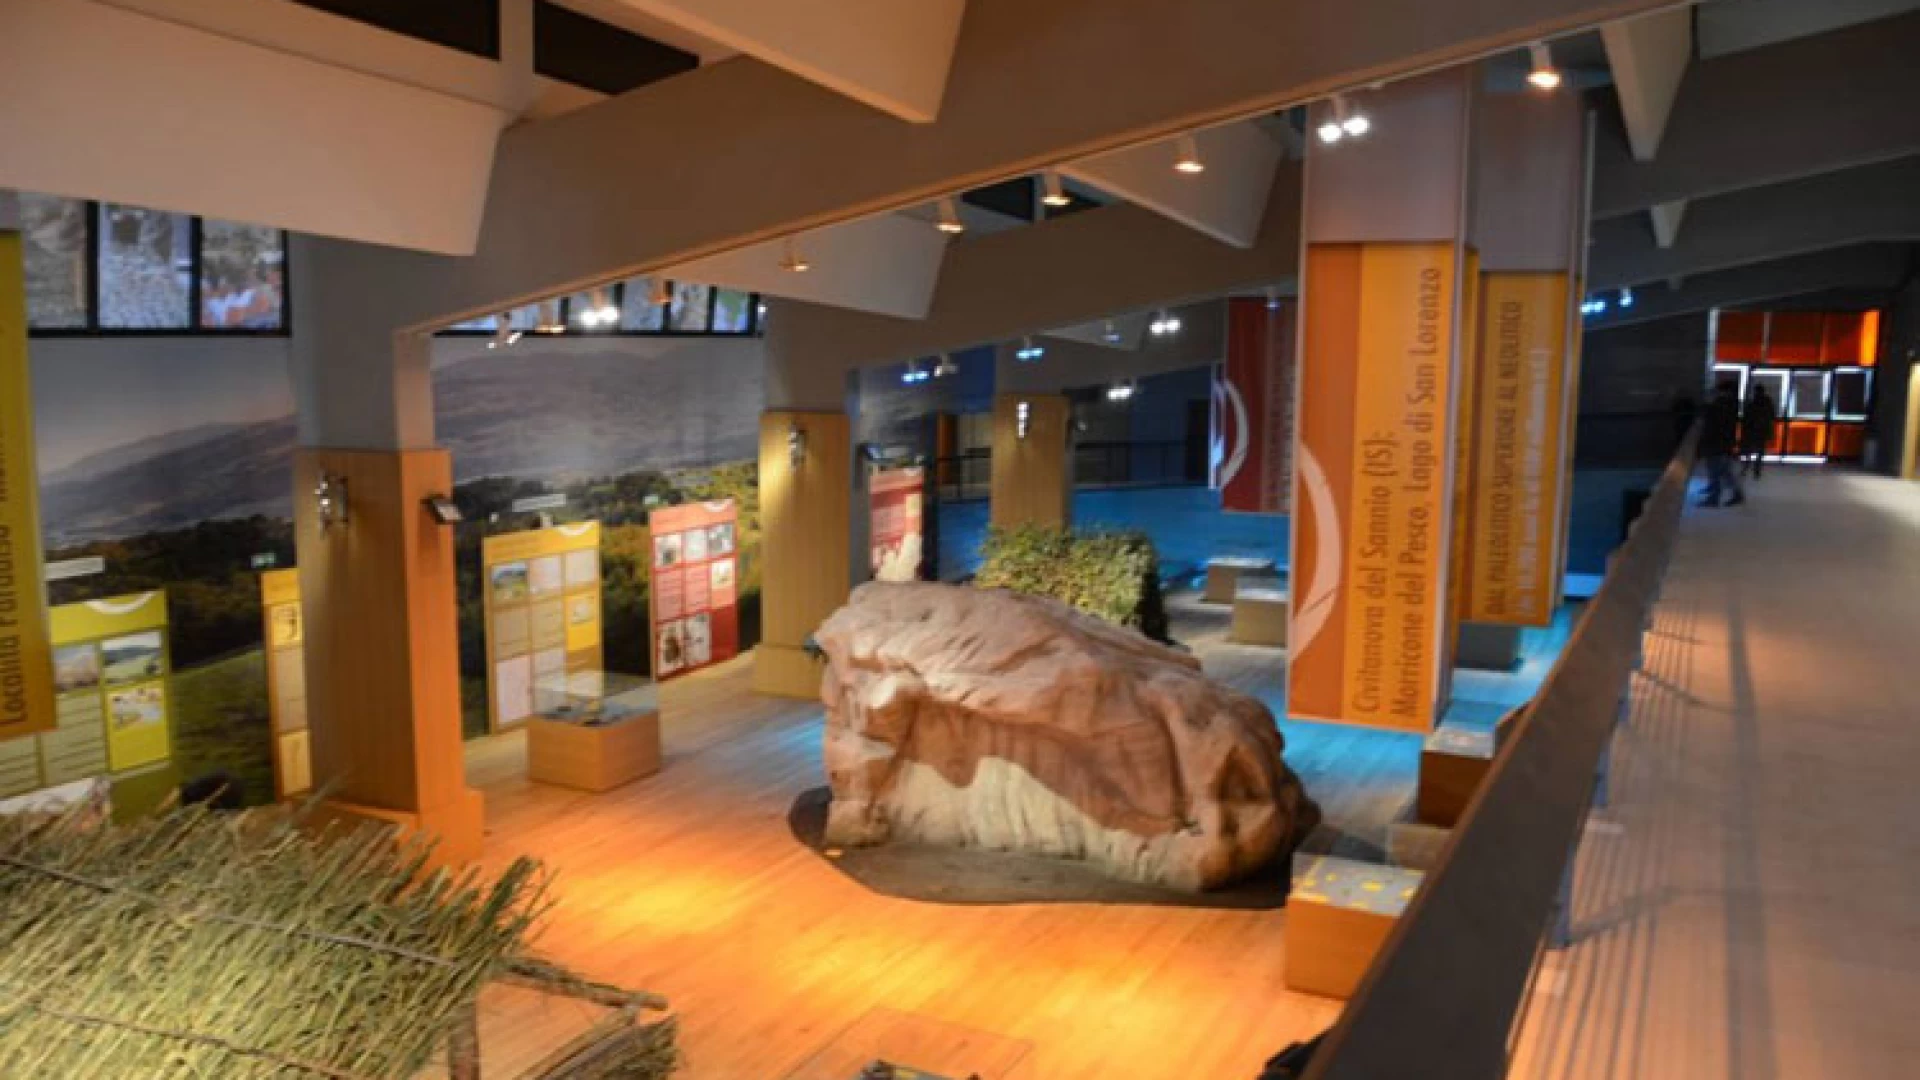 Isernia: Giornate Europee dell’Archeologia, importante convegno in programma al Museo del Paleolitico.